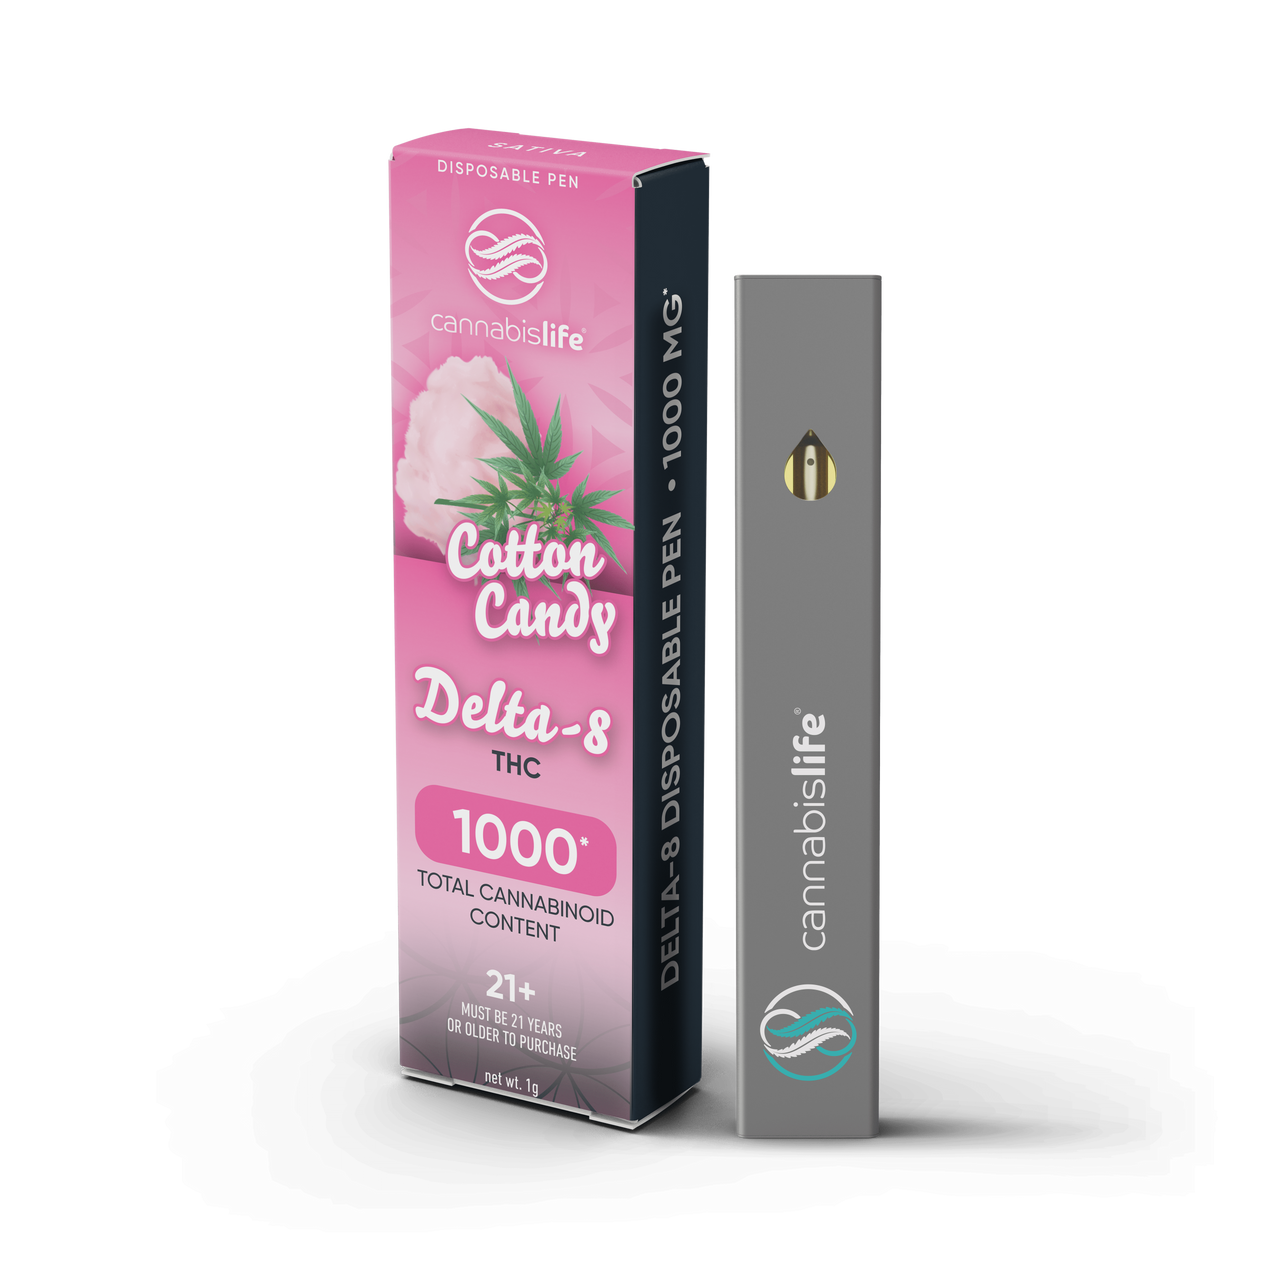 Cannabis Life Cotton Candy Delta 8 Disposable Pen 1000mg